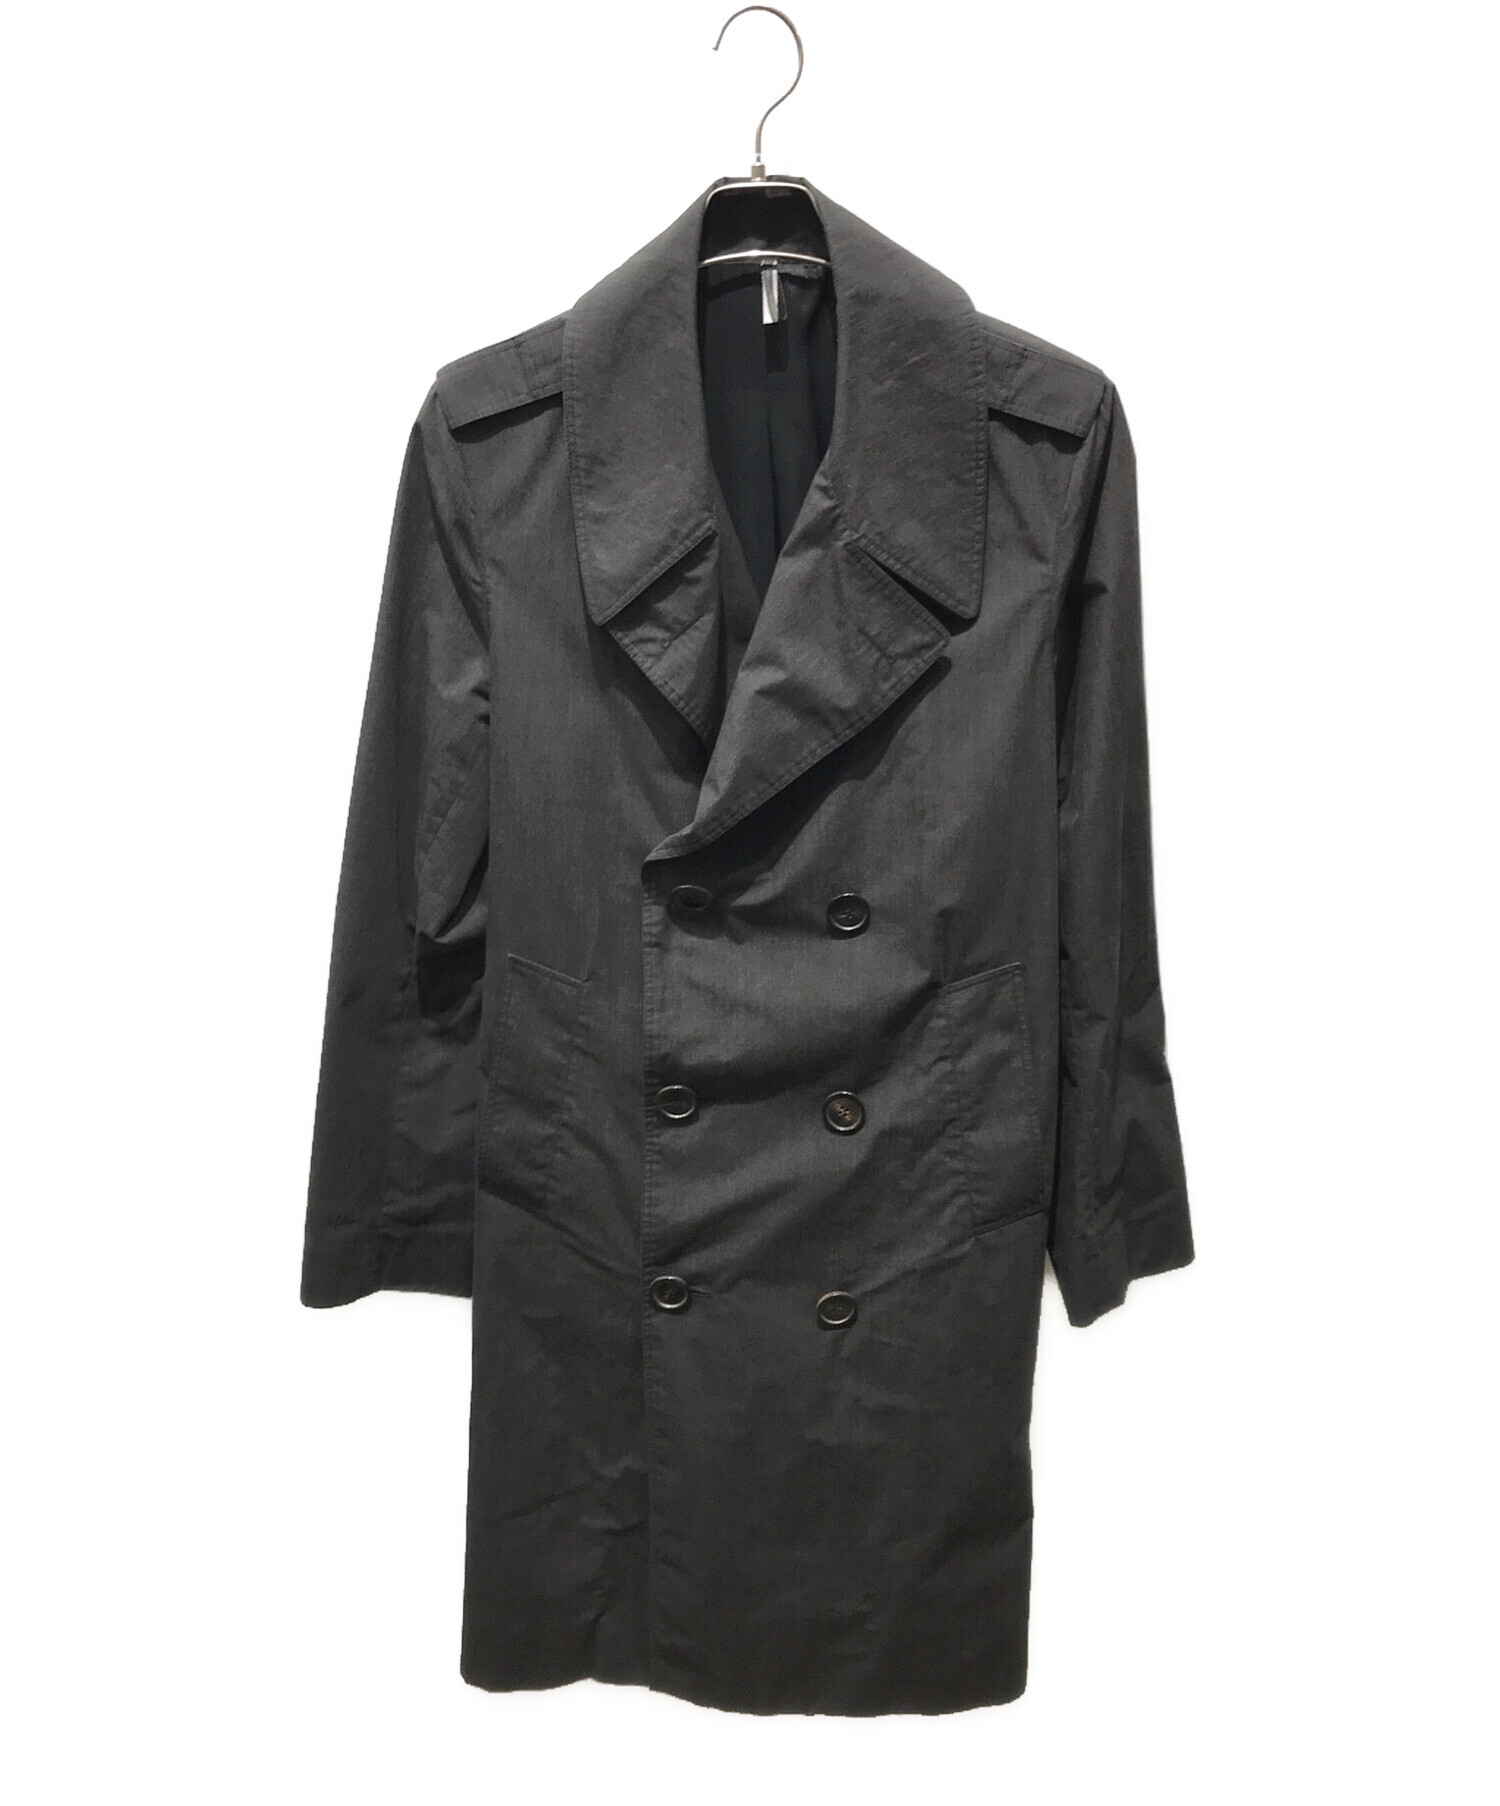 Dior homme ディオール オム トレンチコート 黒 サイズ 46 - ブランド別